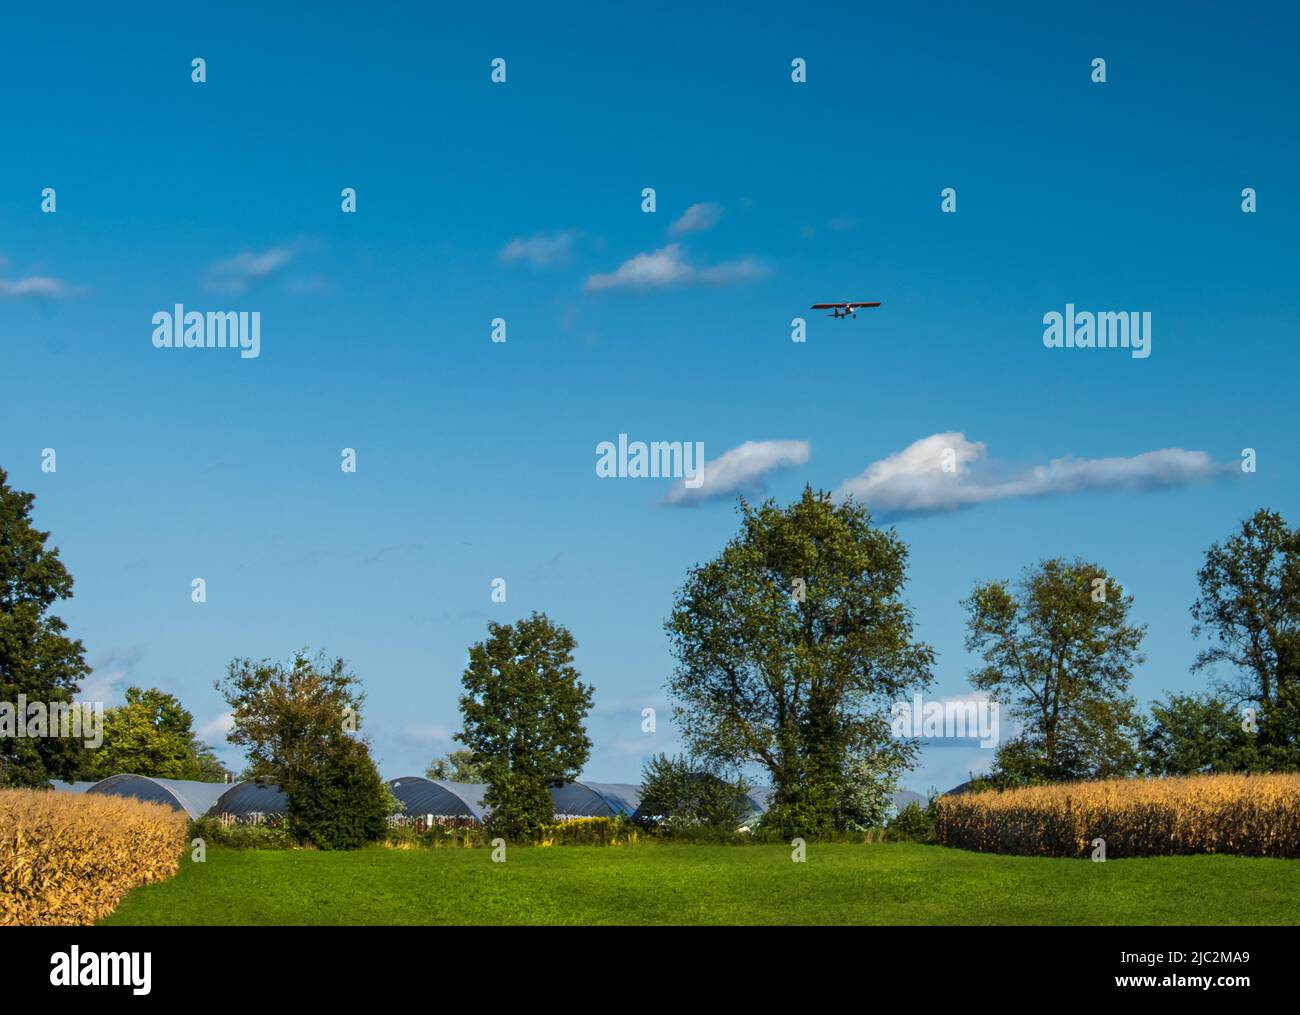 Un champ de fermier vert avec des champs de maïs de chaque côté, une ligne d'arbres en arrière-plan, et un avion dans un grand ciel bleu, été, Pennsylvanie Banque D'Images